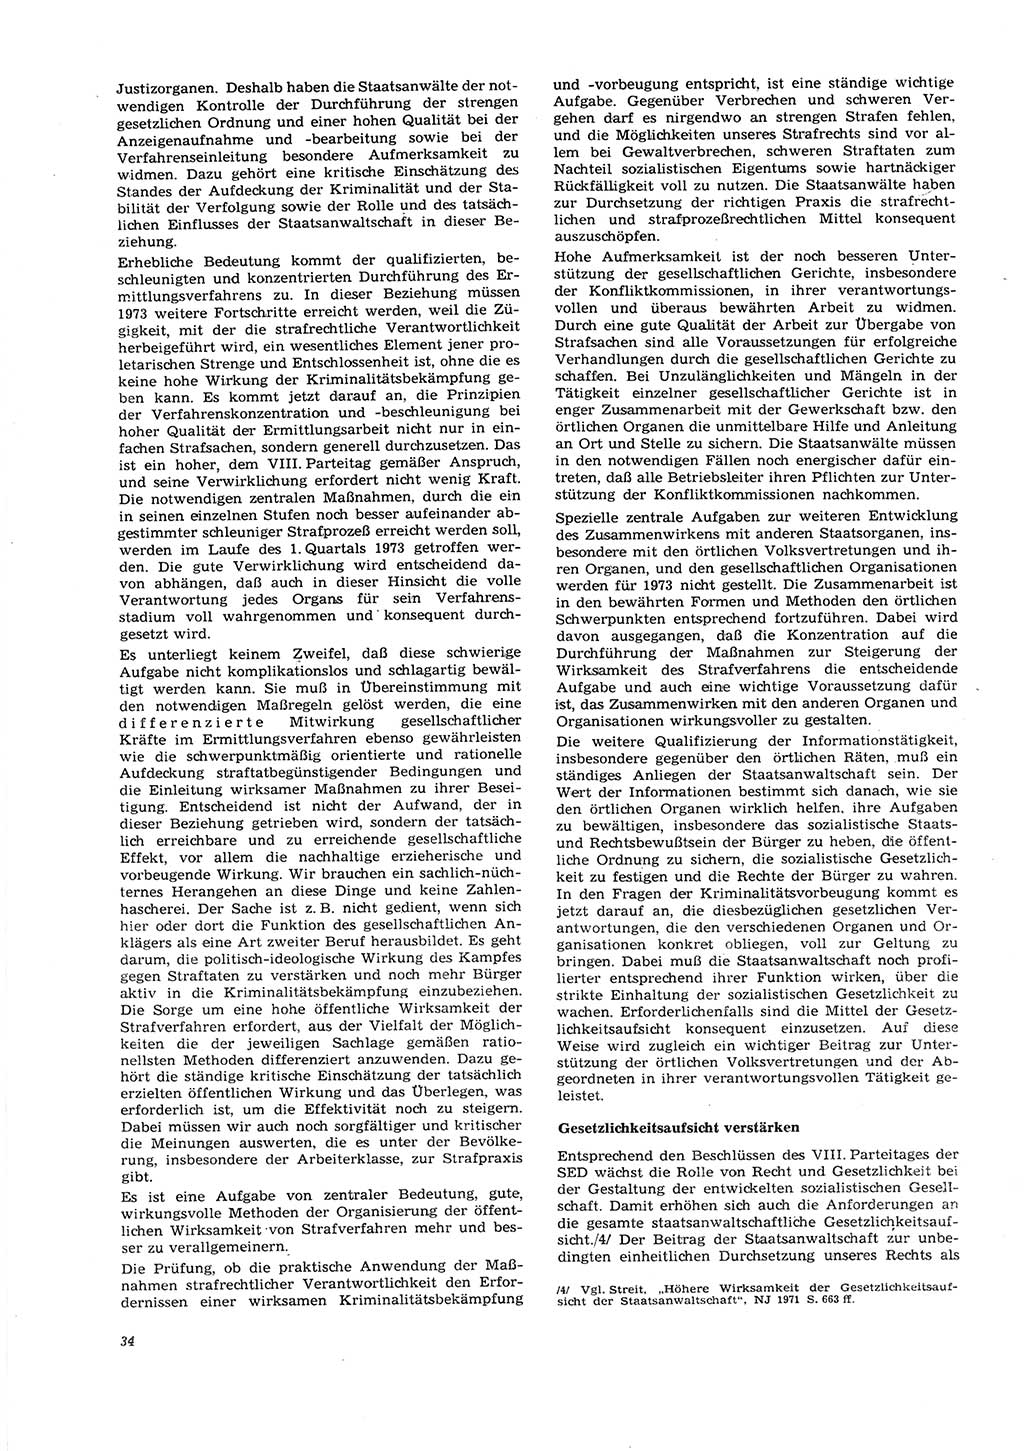 Neue Justiz (NJ), Zeitschrift für Recht und Rechtswissenschaft [Deutsche Demokratische Republik (DDR)], 27. Jahrgang 1973, Seite 34 (NJ DDR 1973, S. 34)